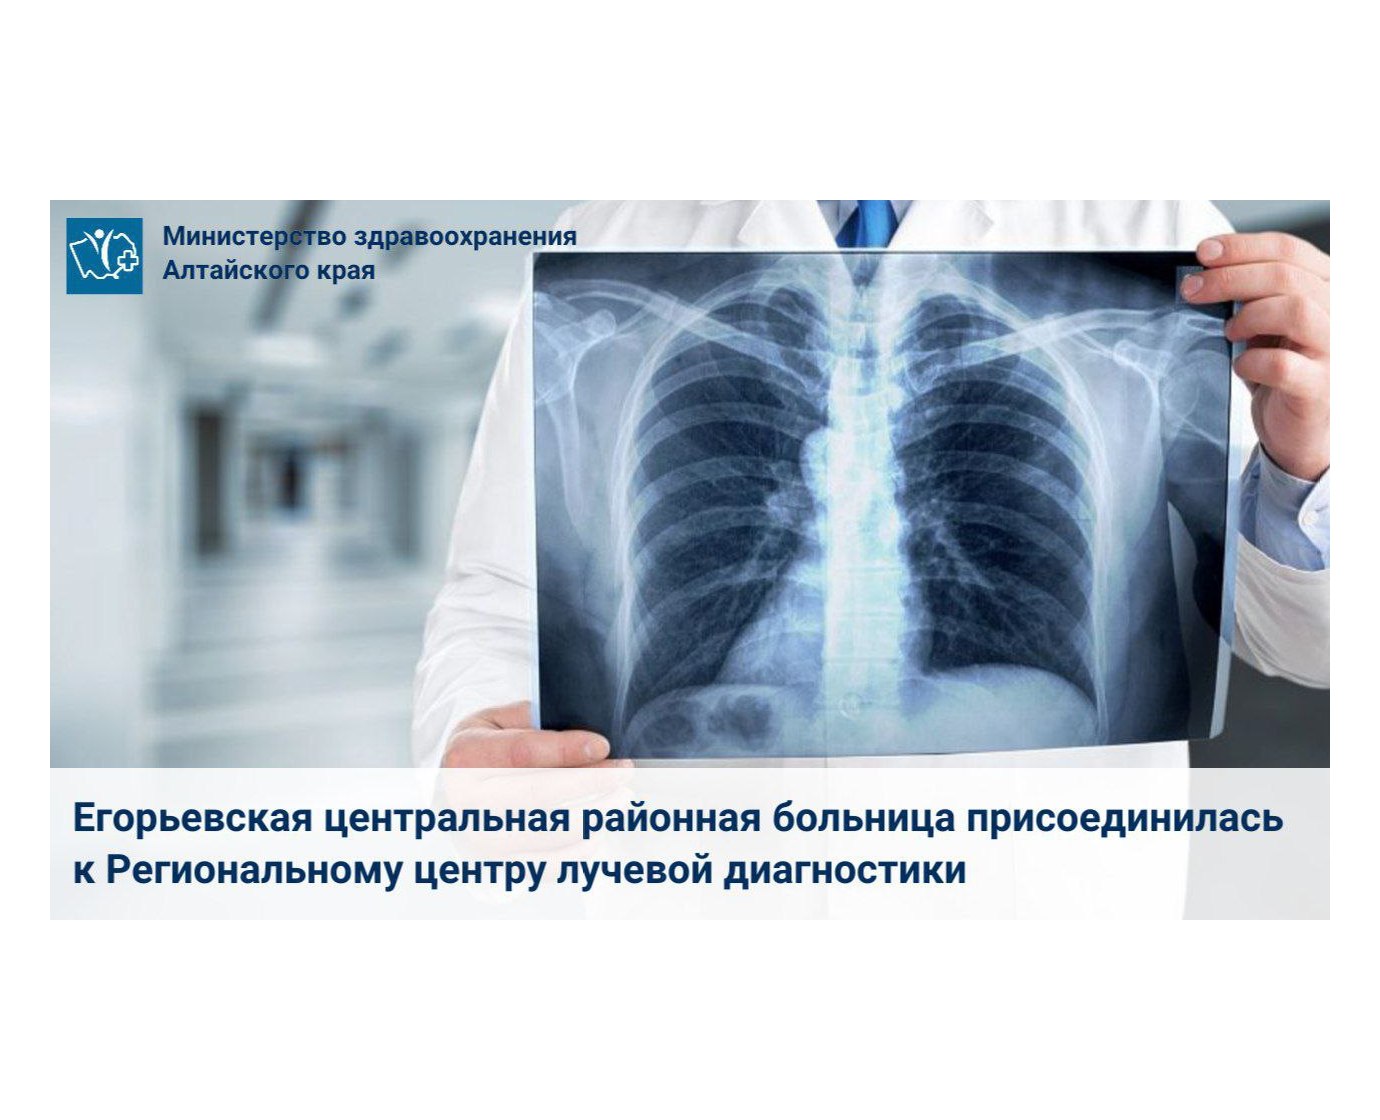 Егорьевская центральная районная больница присоединилась к Региональному центру лучевой диагностики.